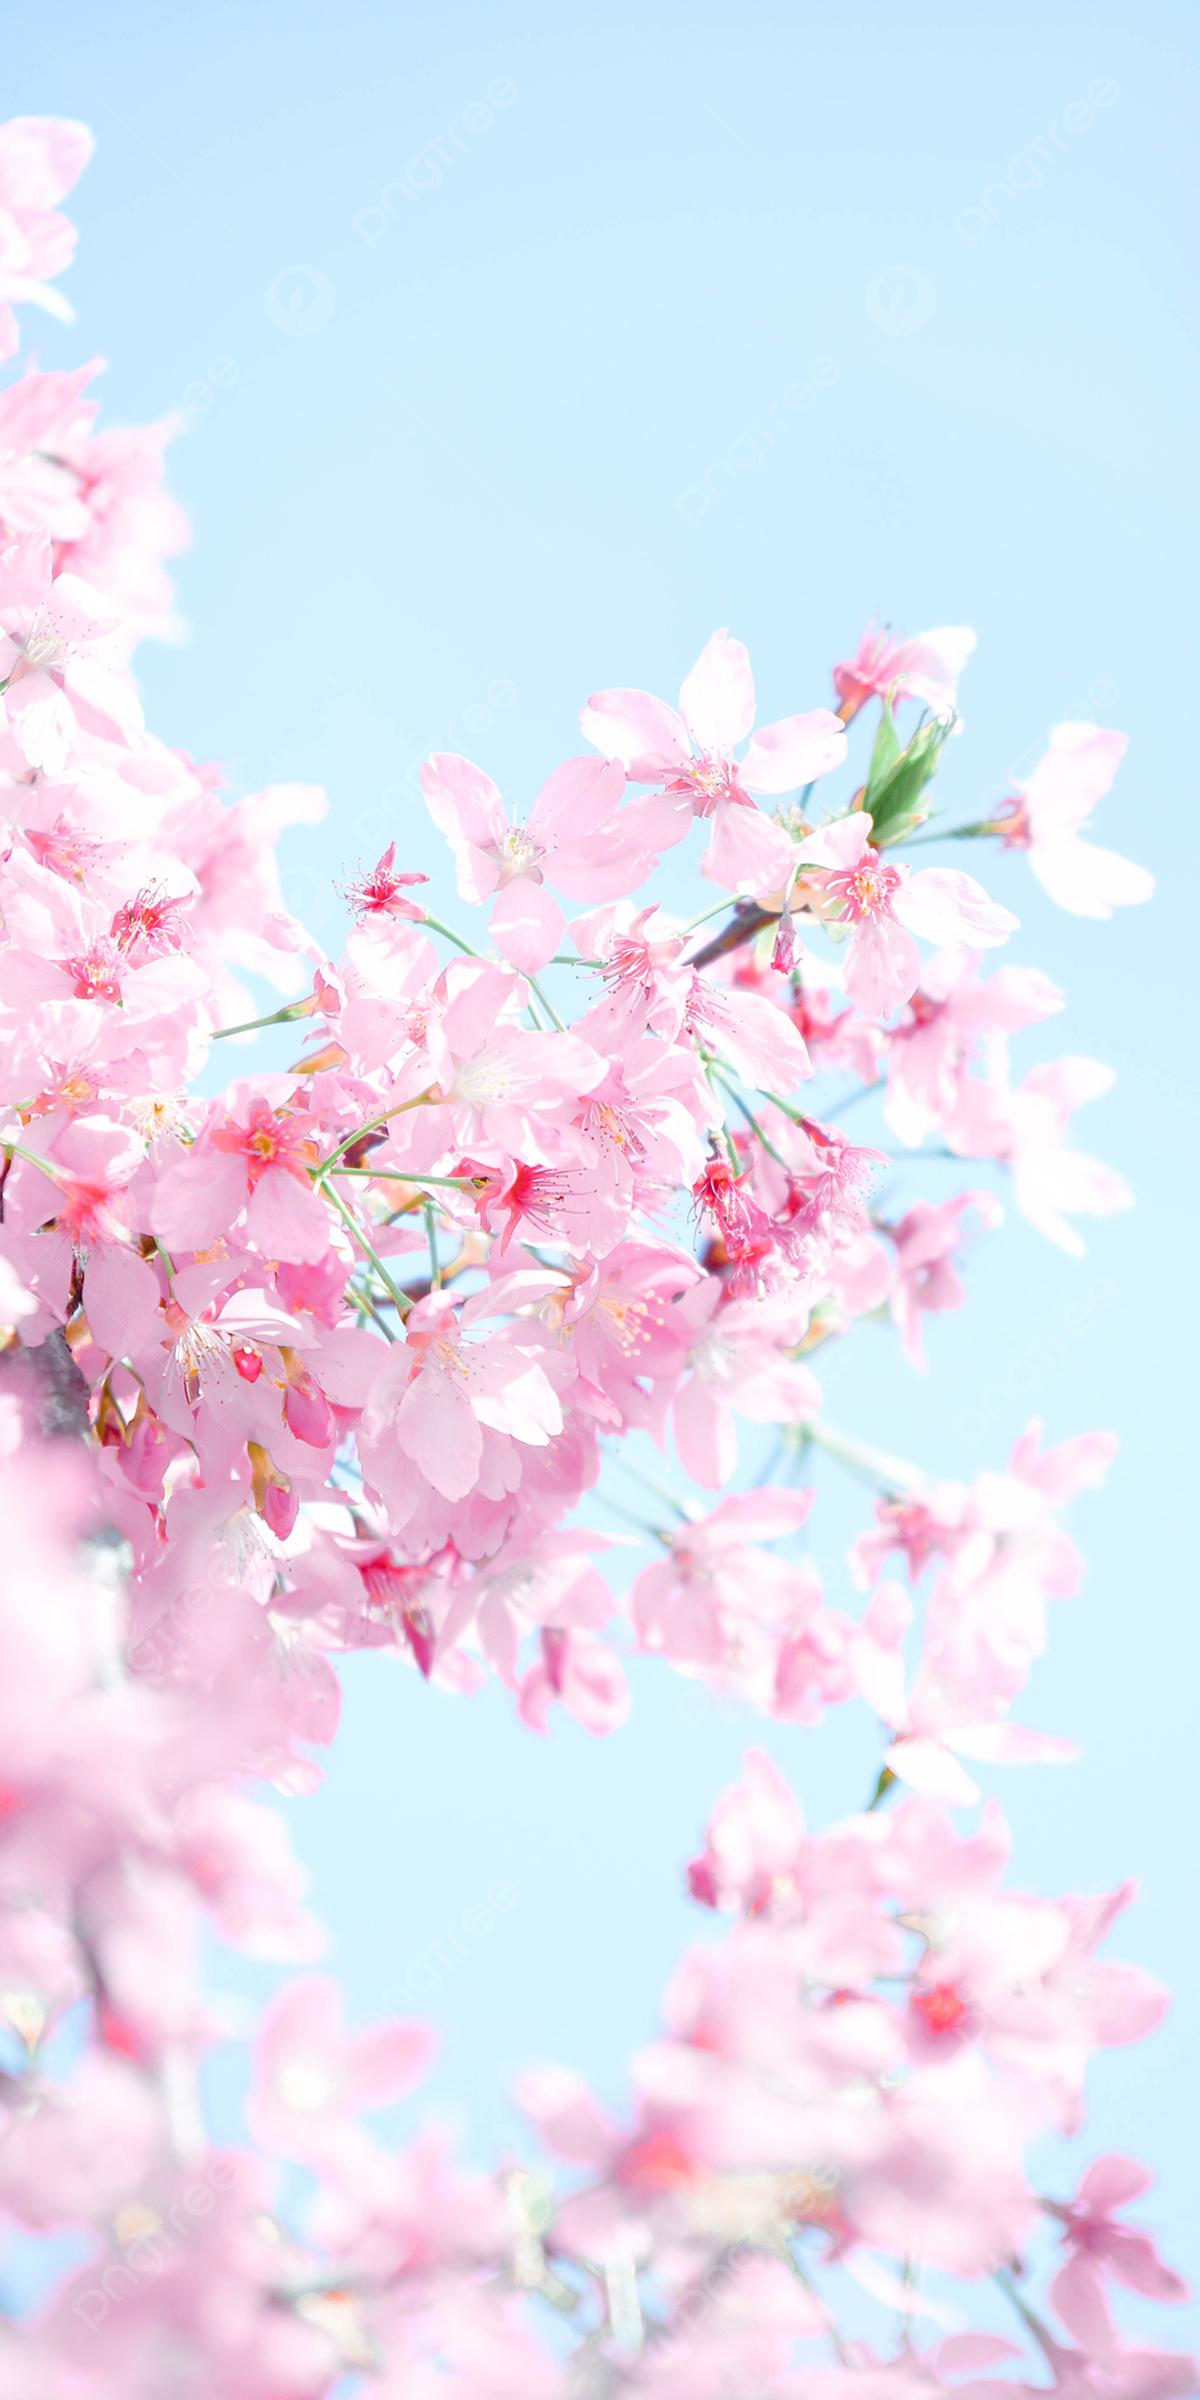 Весна -это сплошные заставки на телефон!) . #бруннера | Instagram